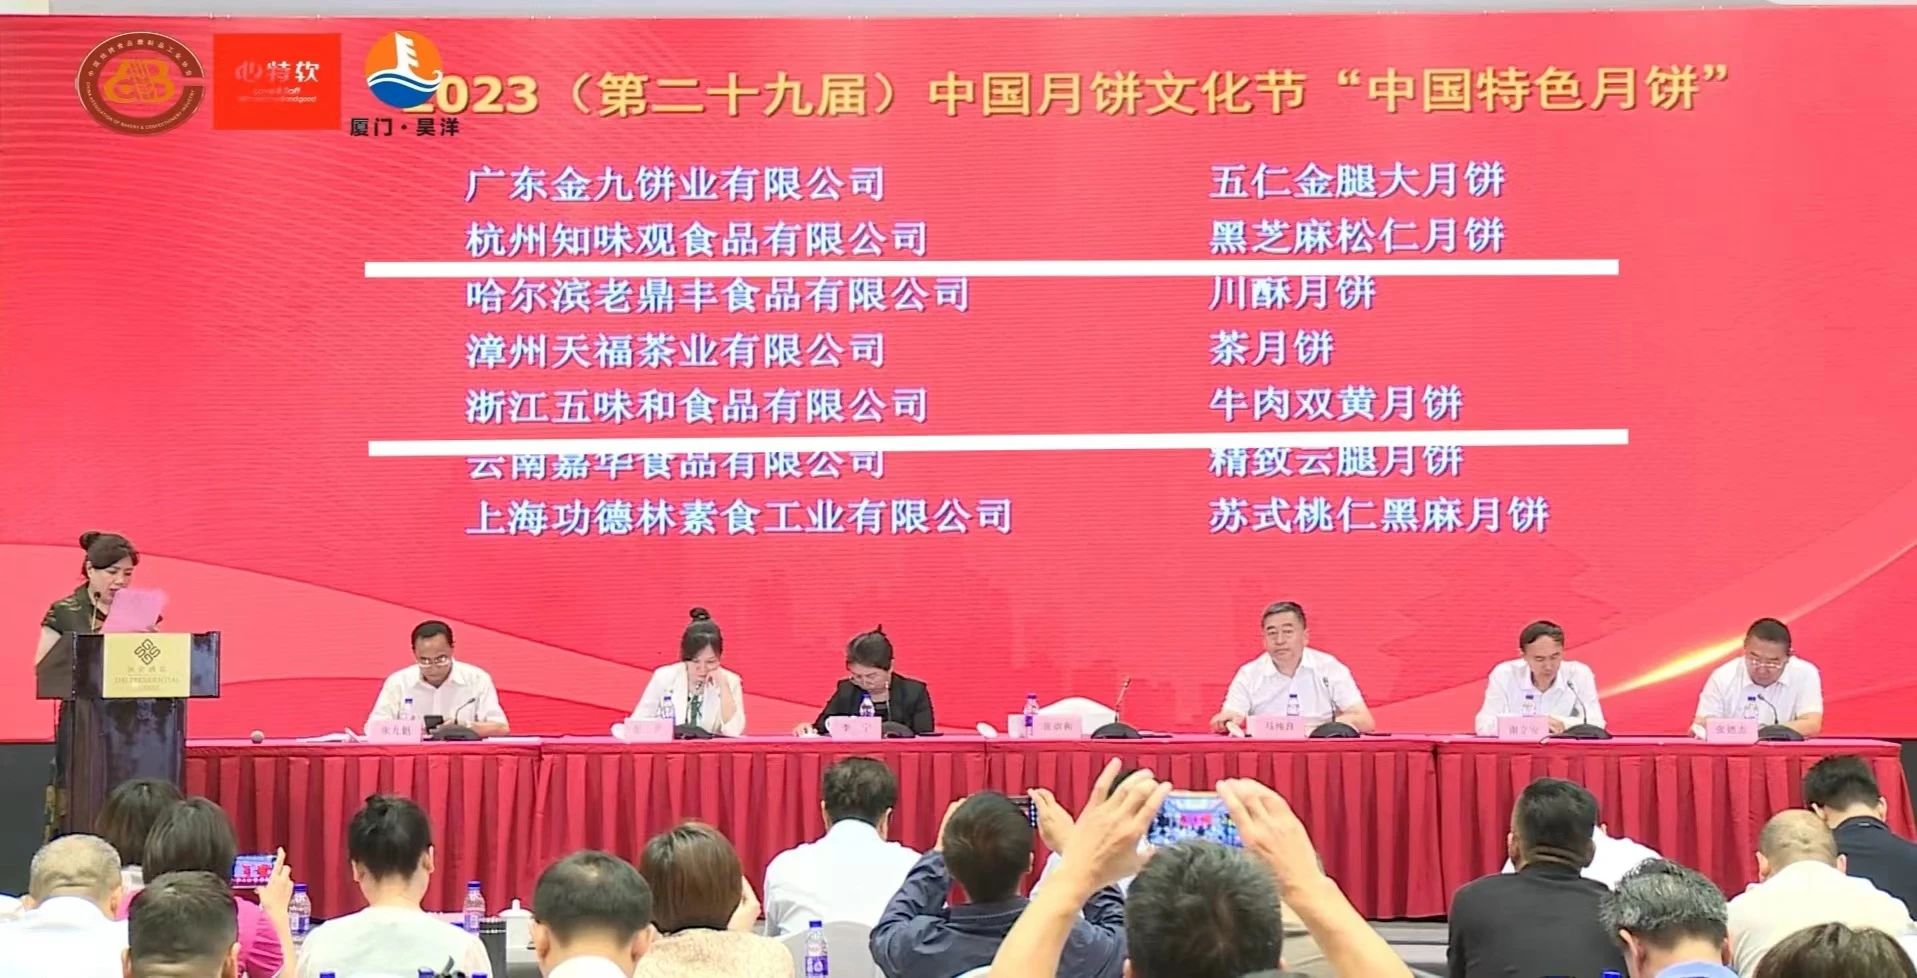 喜 报!!! 2023（第二十九届）中国月饼文化节,杭州老字号企业喜获多项荣誉